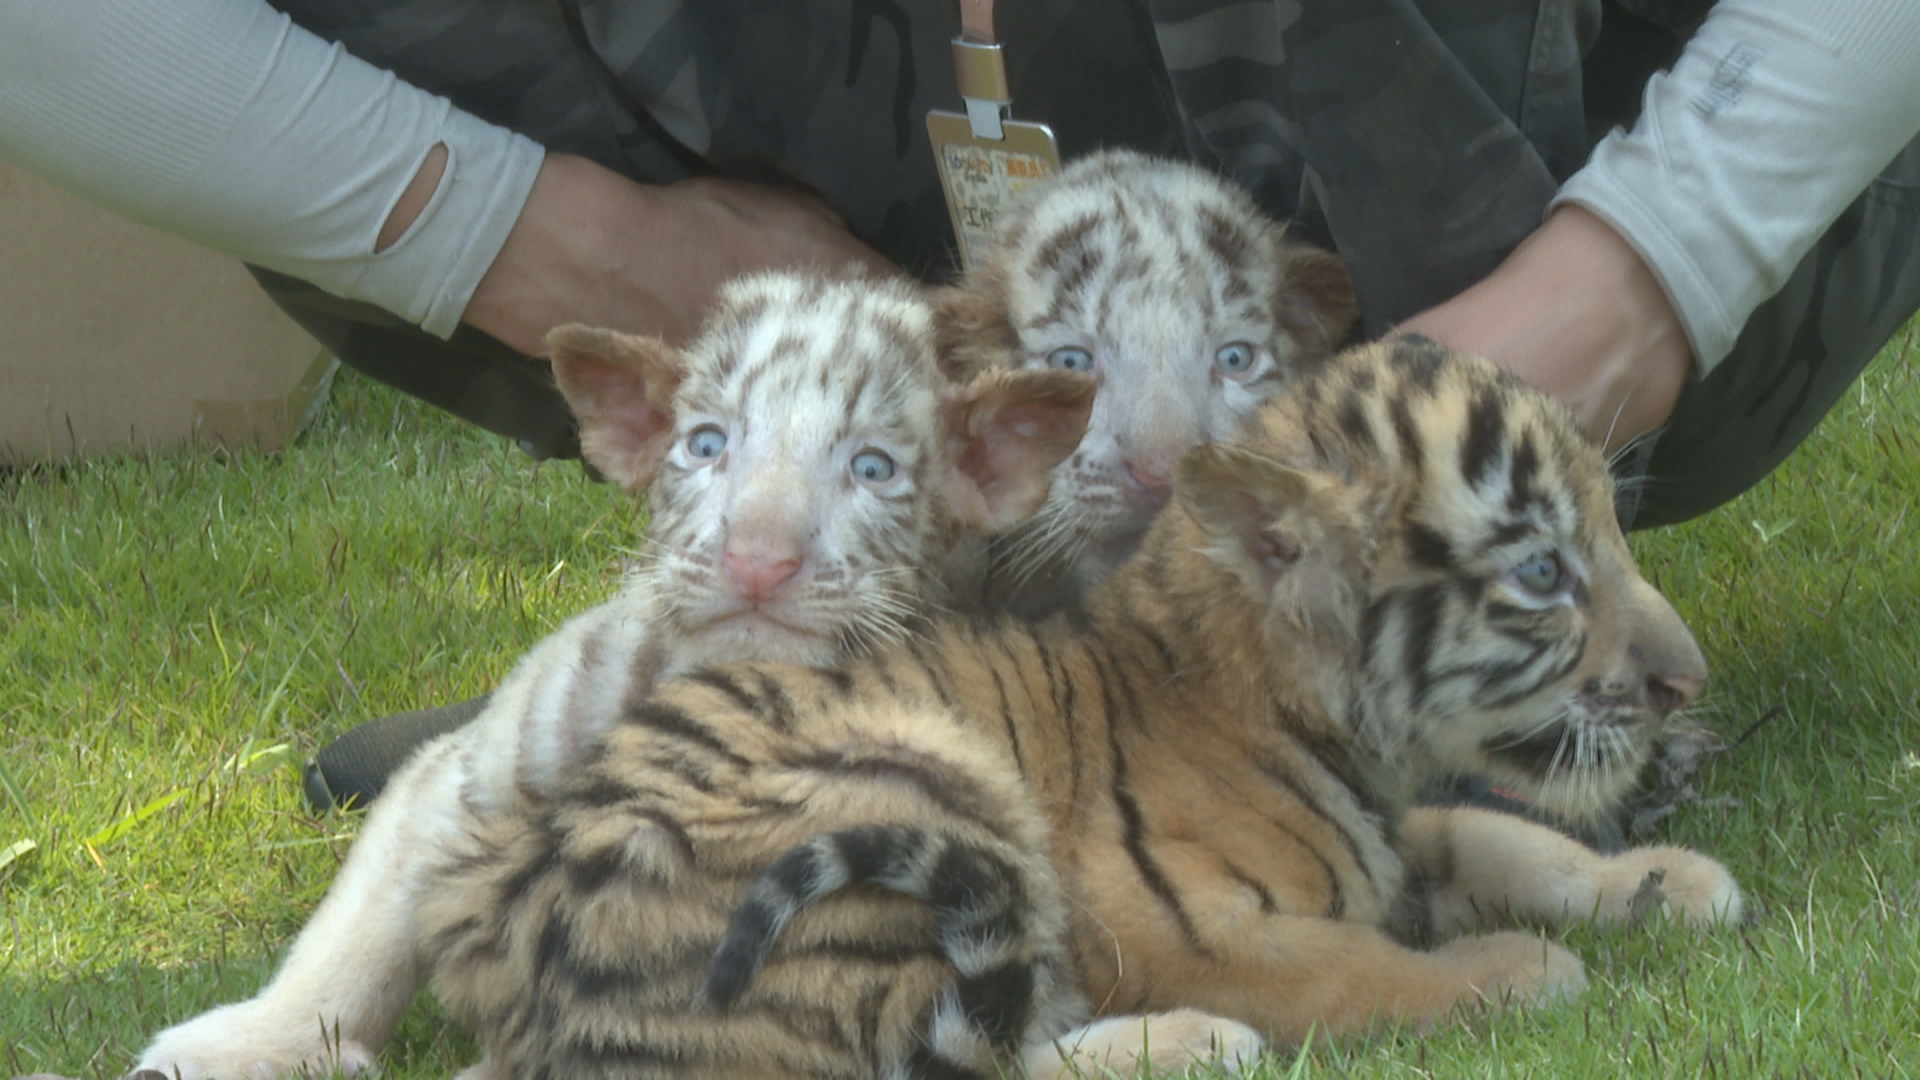 据饲养员介绍,这三只小老虎看上去还有些胆怯,今后将会经常带它们出来